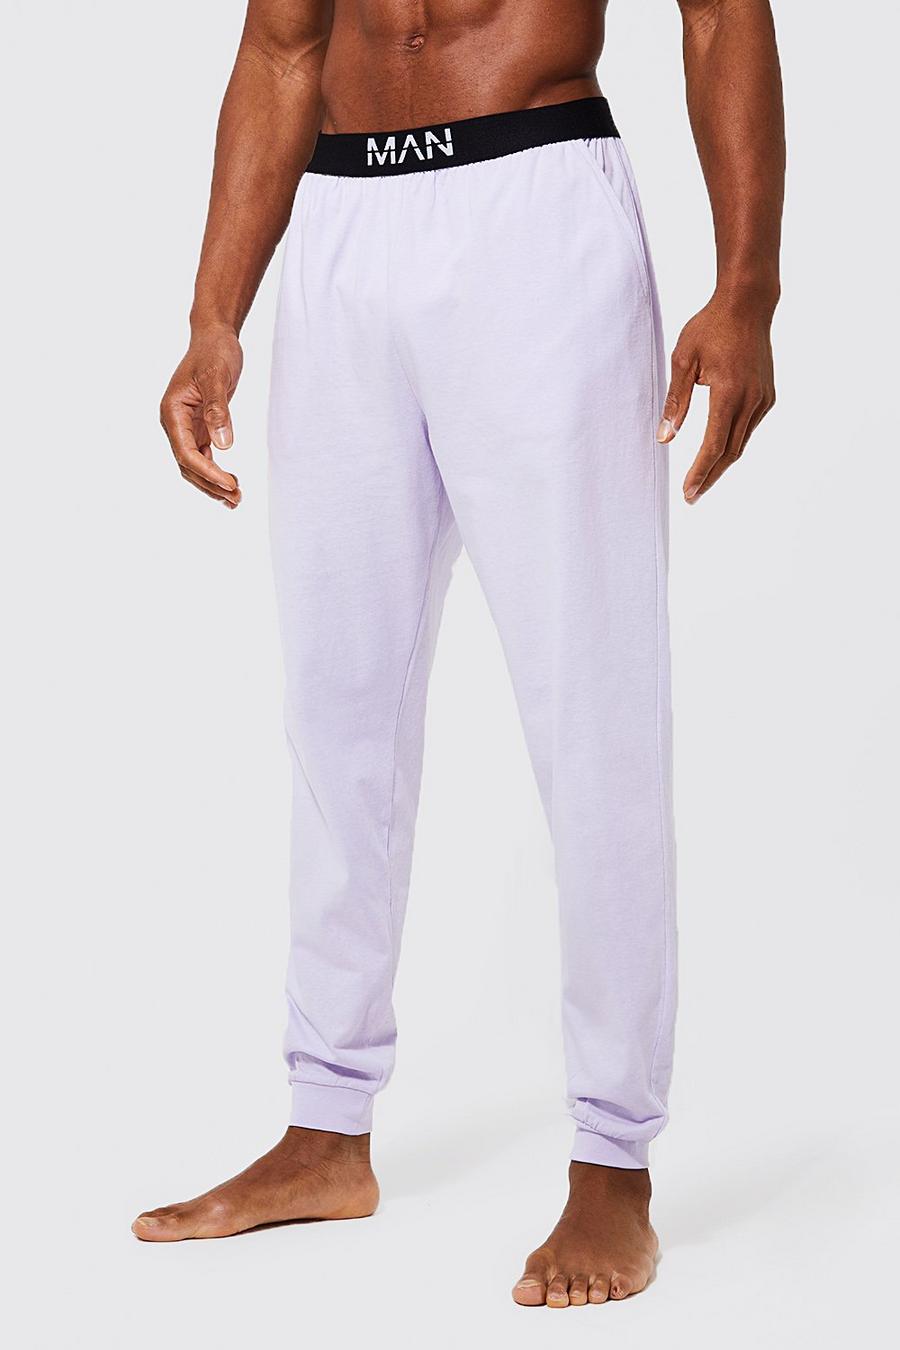 Lilac purple Man Dash Loungewear Pants